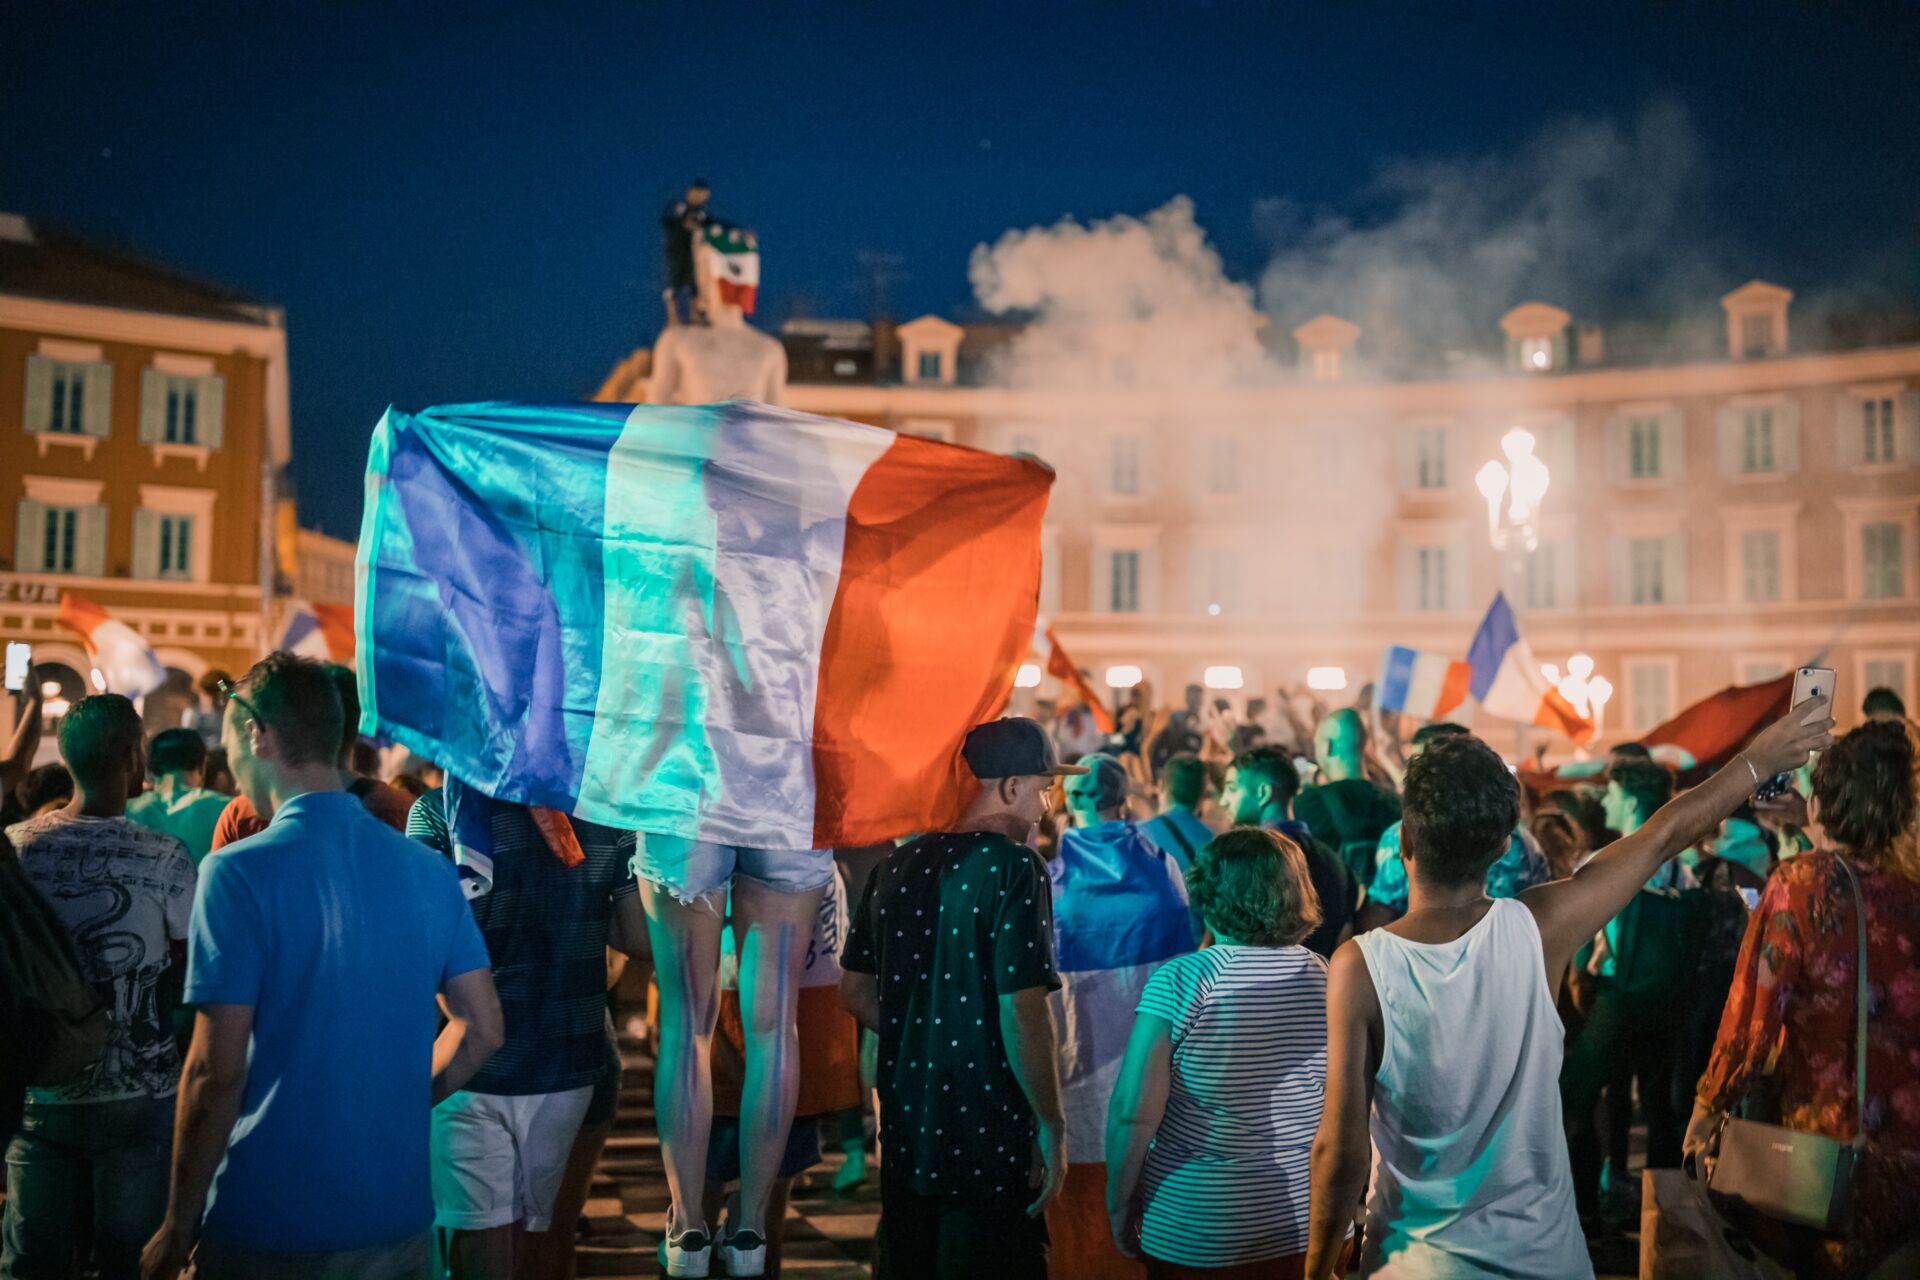 Zgromadzenie ludzi na placu, jedna osoba trzyma za plecami rozwiniętą flagę Francji.